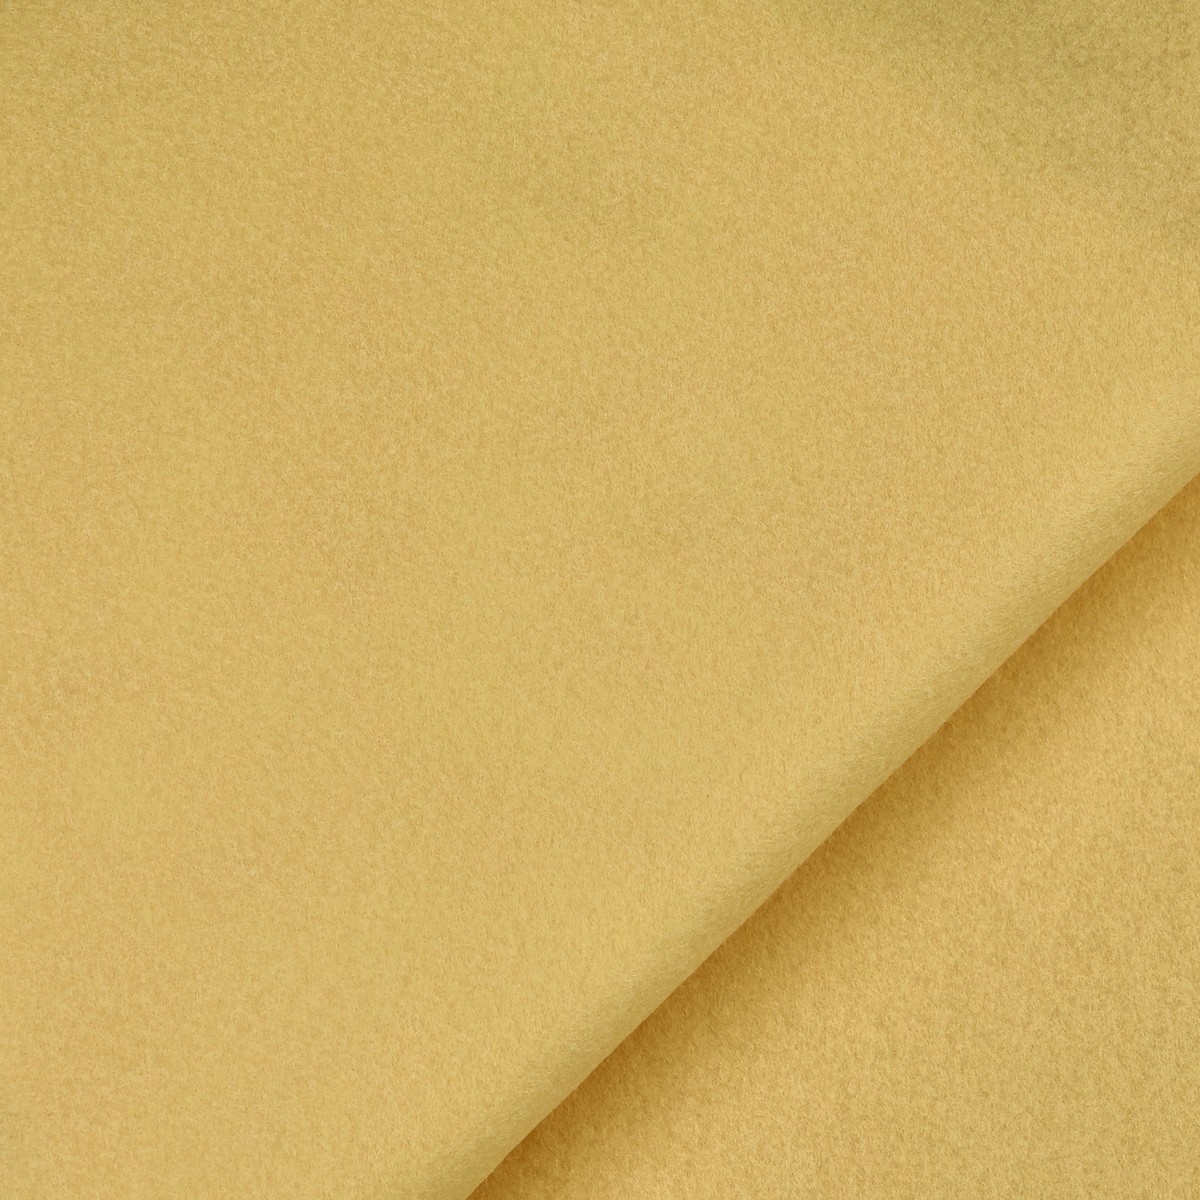 Pannelli Pannolenci - Colore Giallo Baby - Misura 50x70cm 